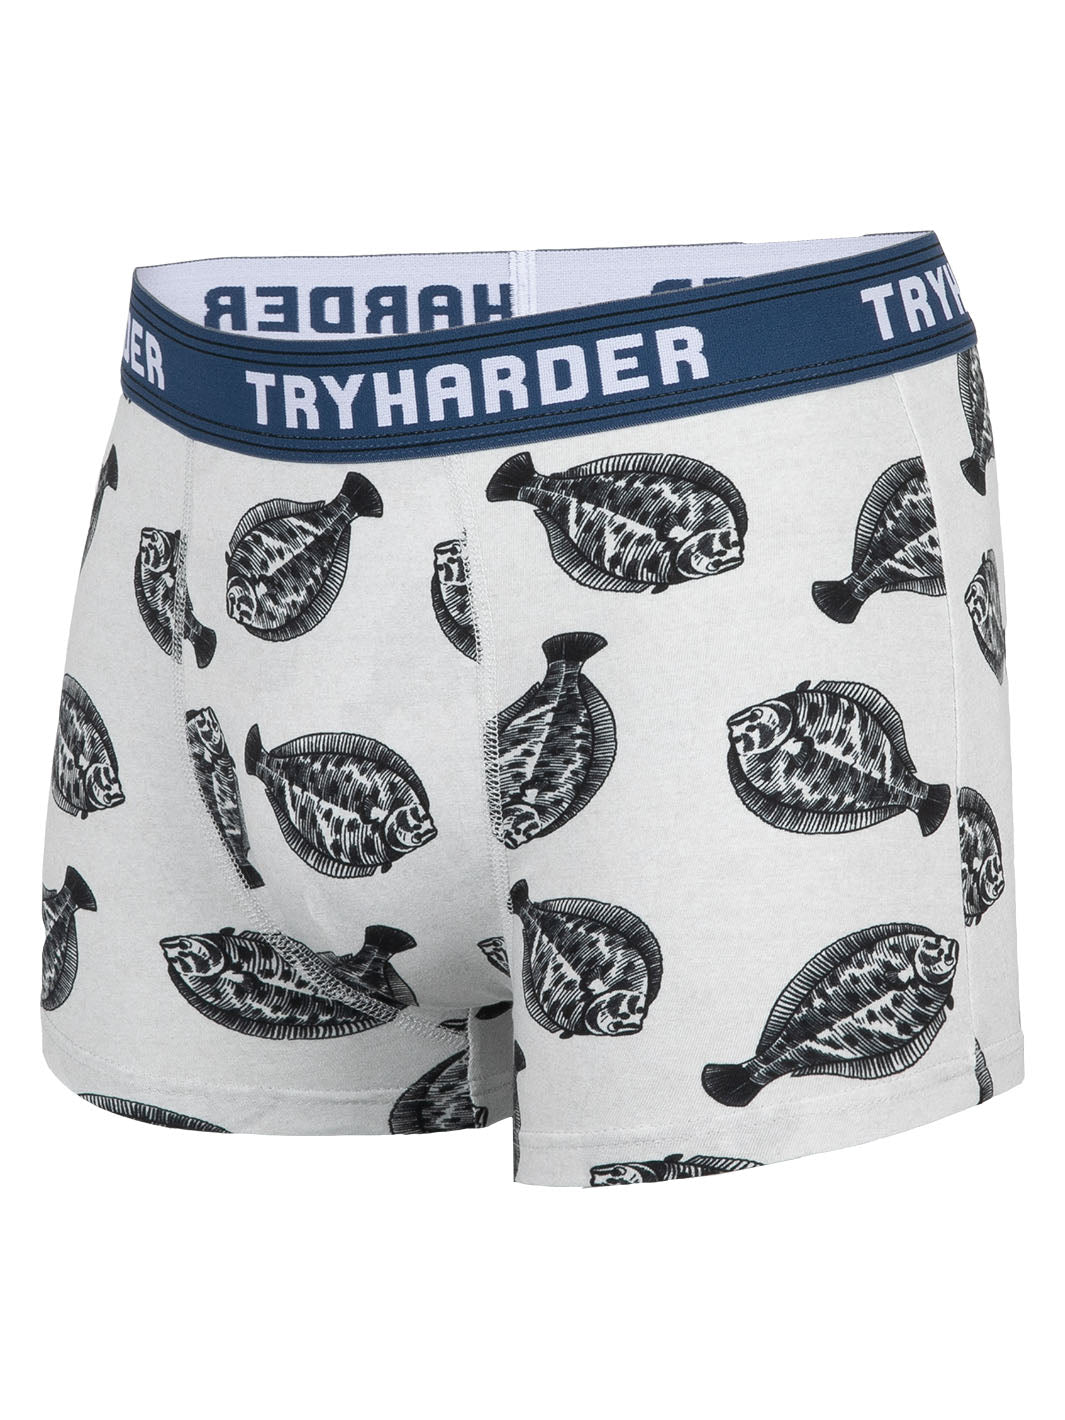 TRYHARDER - Boxer - Fisch Grau 1 Pack